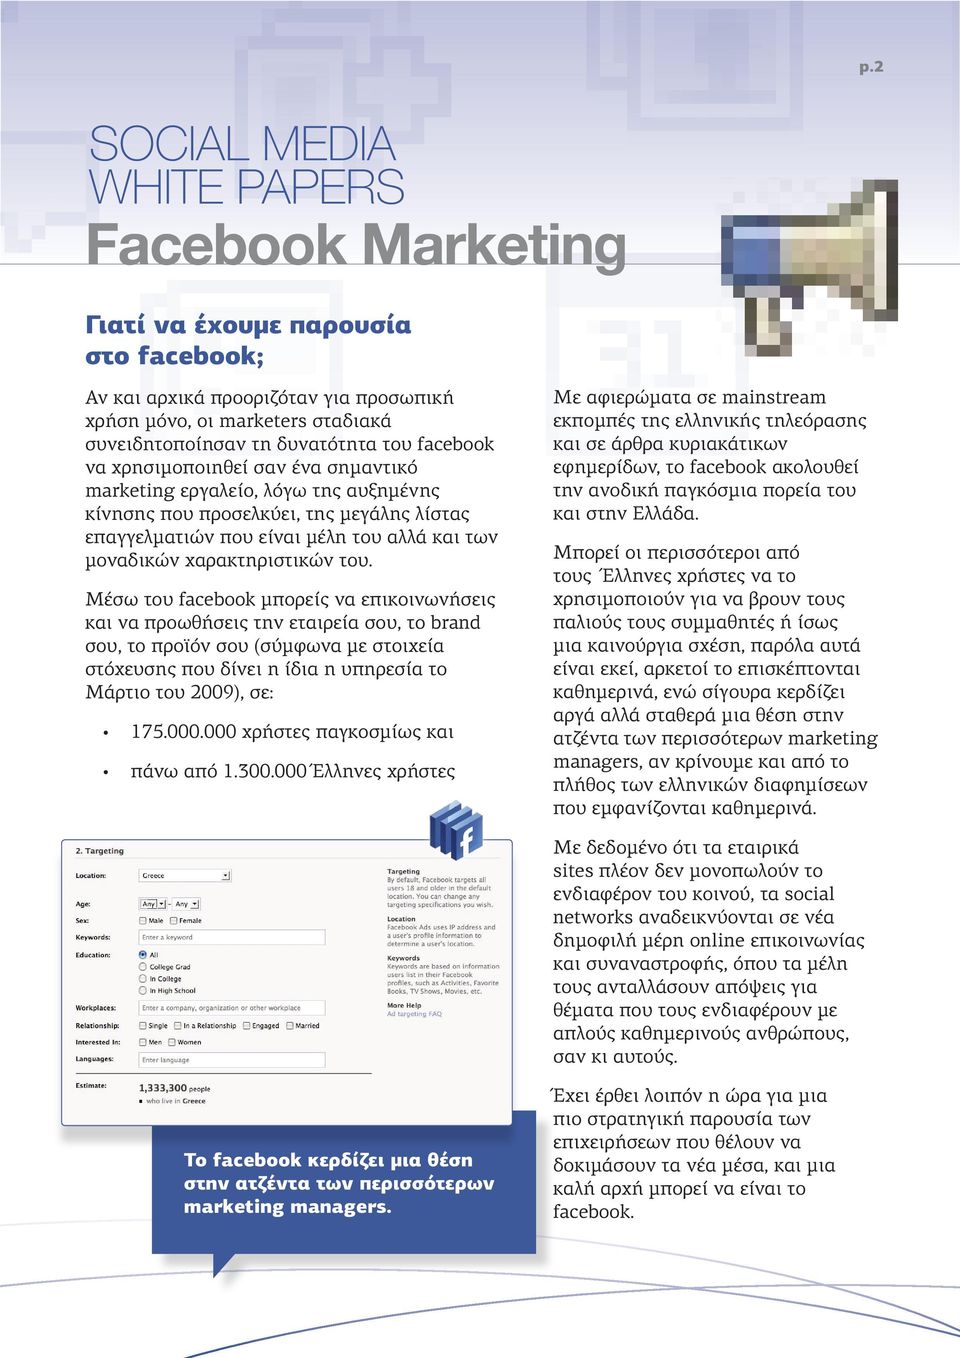 Μέσω του facebook μπορείς να επικοινωνήσεις και να προωθήσεις την εταιρεία σου, το brand σου, το προϊόν σου (σύμφωνα με στοιχεία στόχευσης που δίνει η ίδια η υπηρεσία το Μάρτιο του 2009), σε: 175.000.